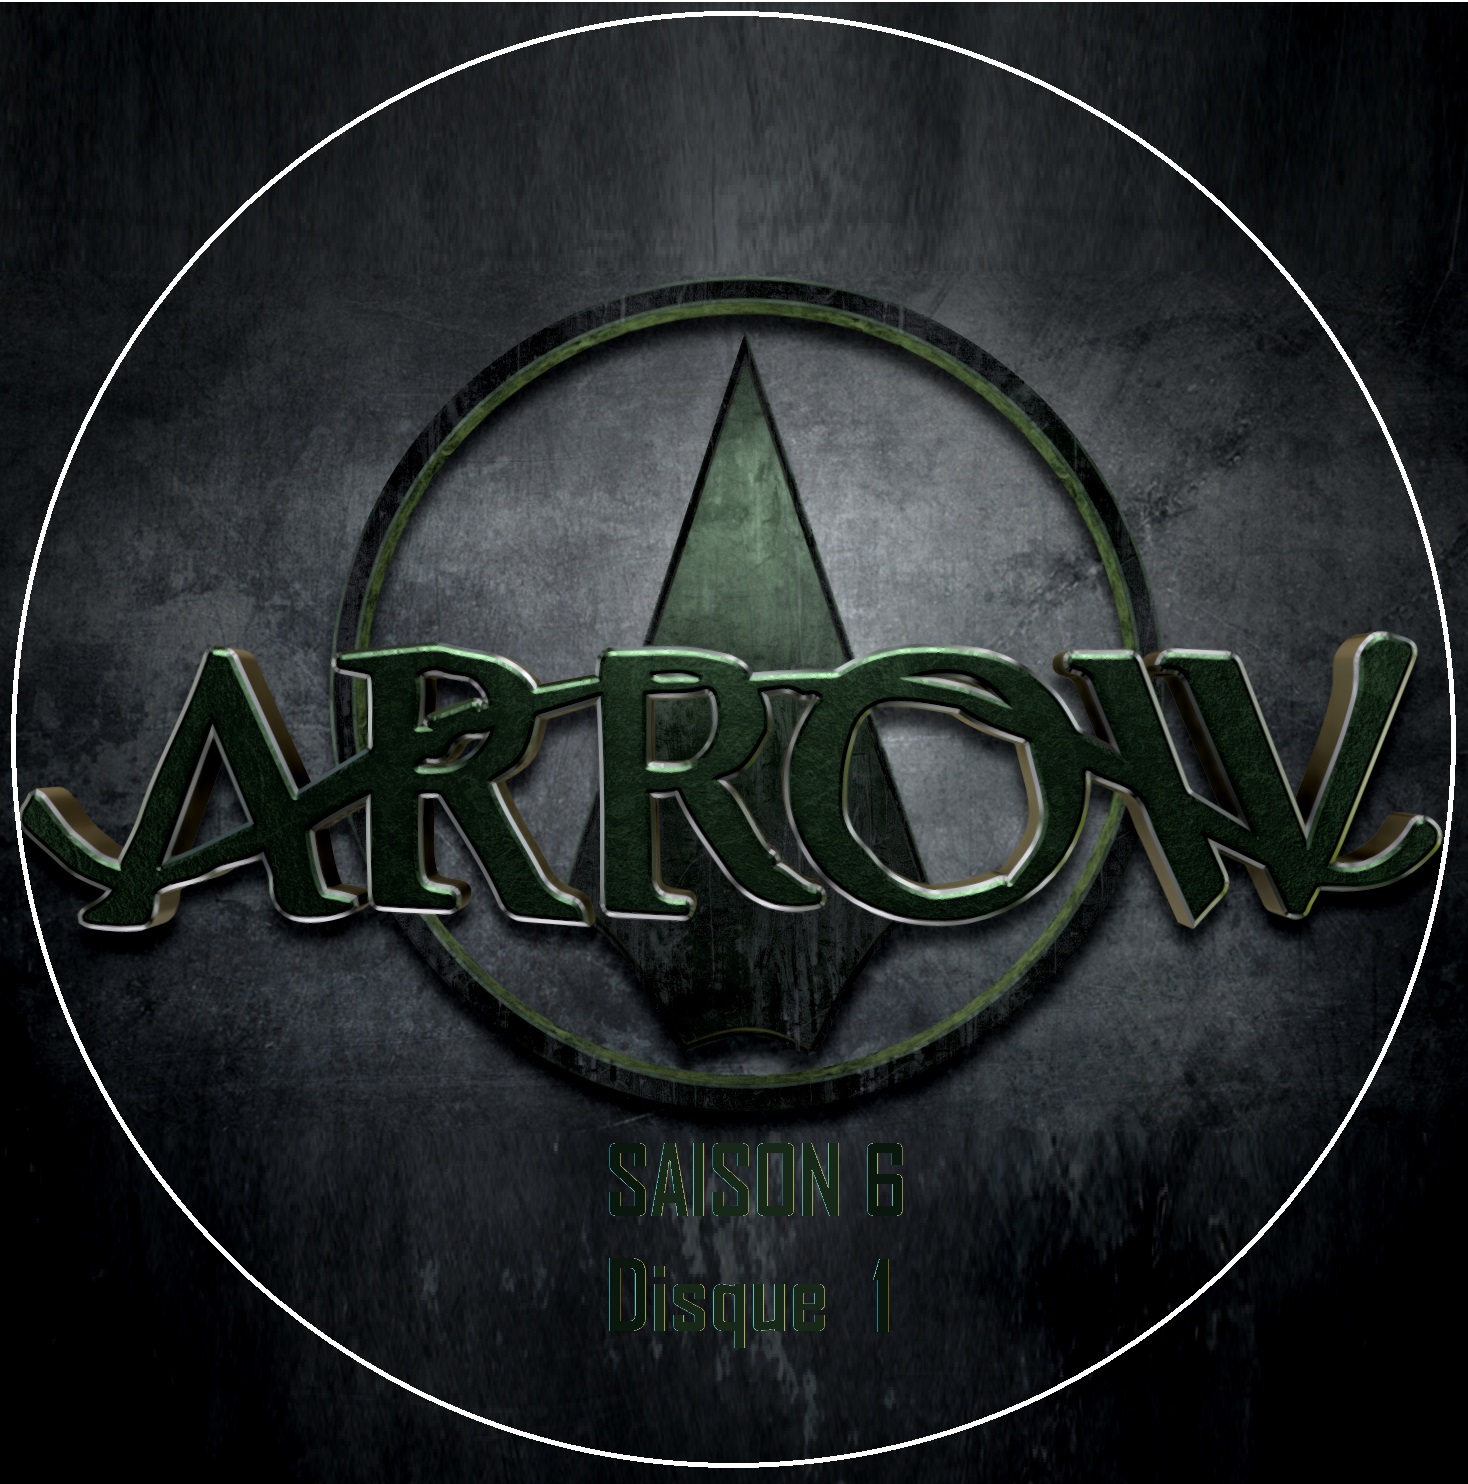 Arrow saison 6 DISC 1 custom